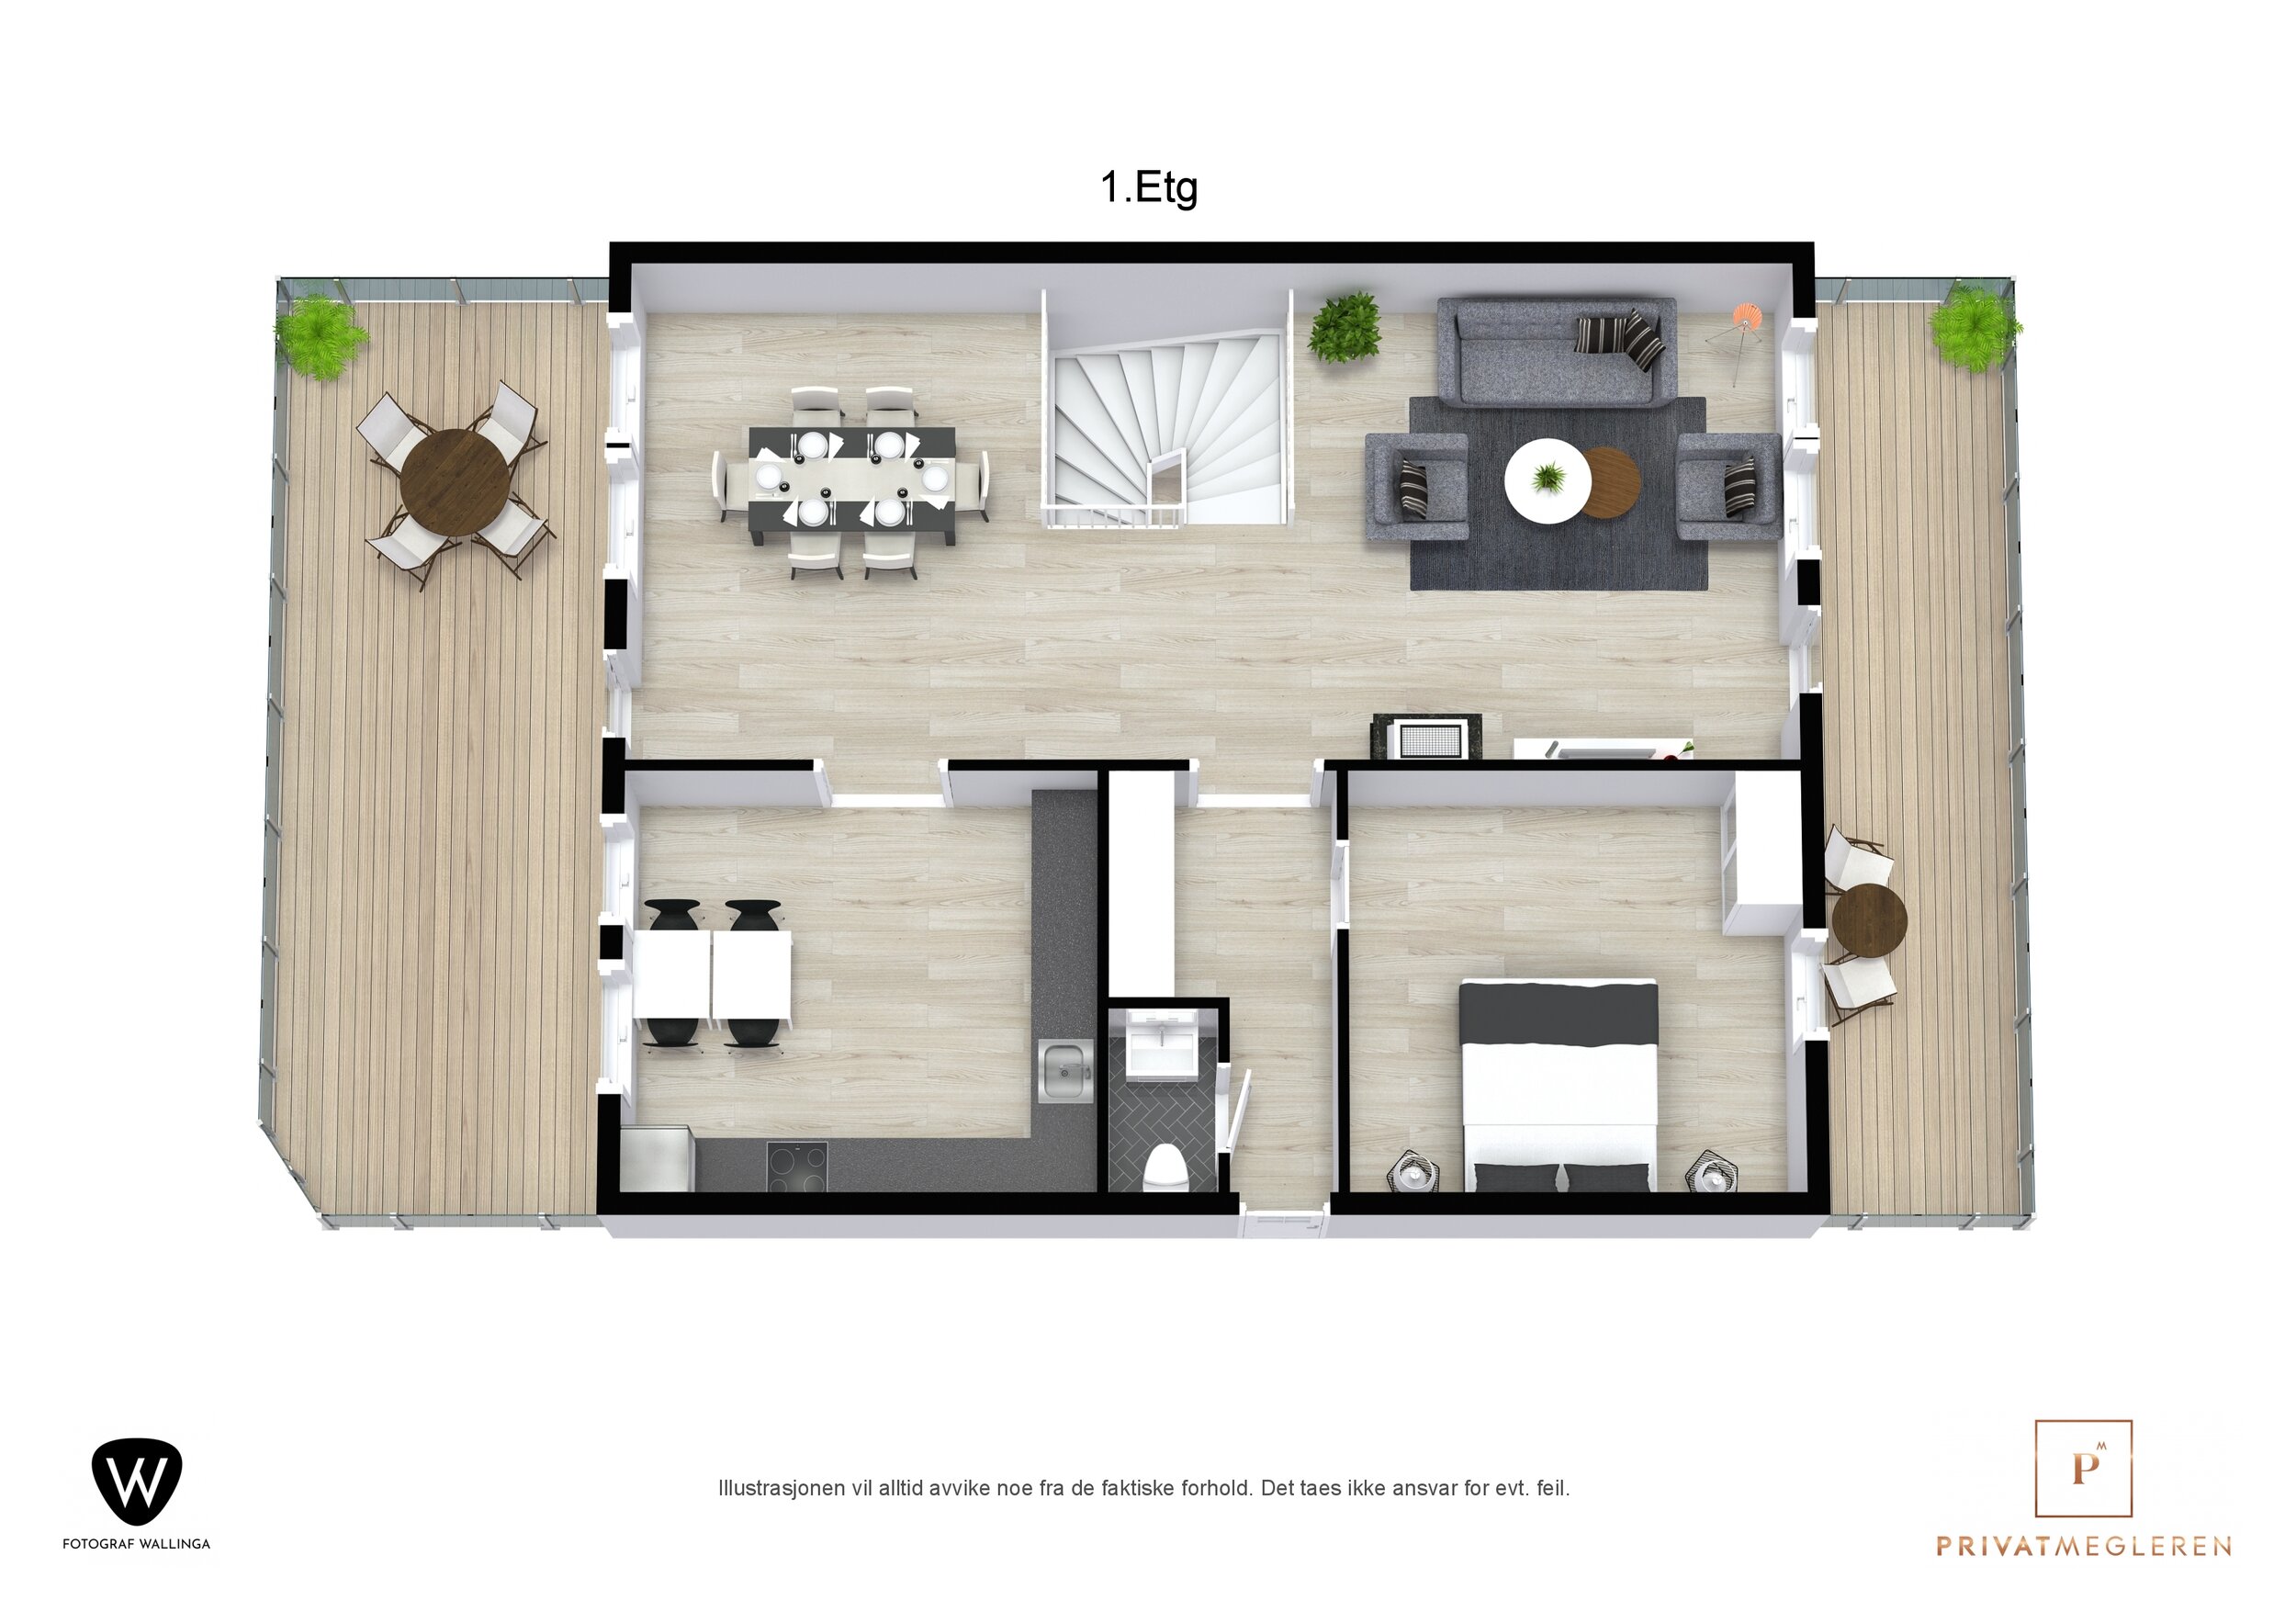 Floorplan letterhead - Sølvreven 50 - 1.Etg - 3D Floor Plan.jpg